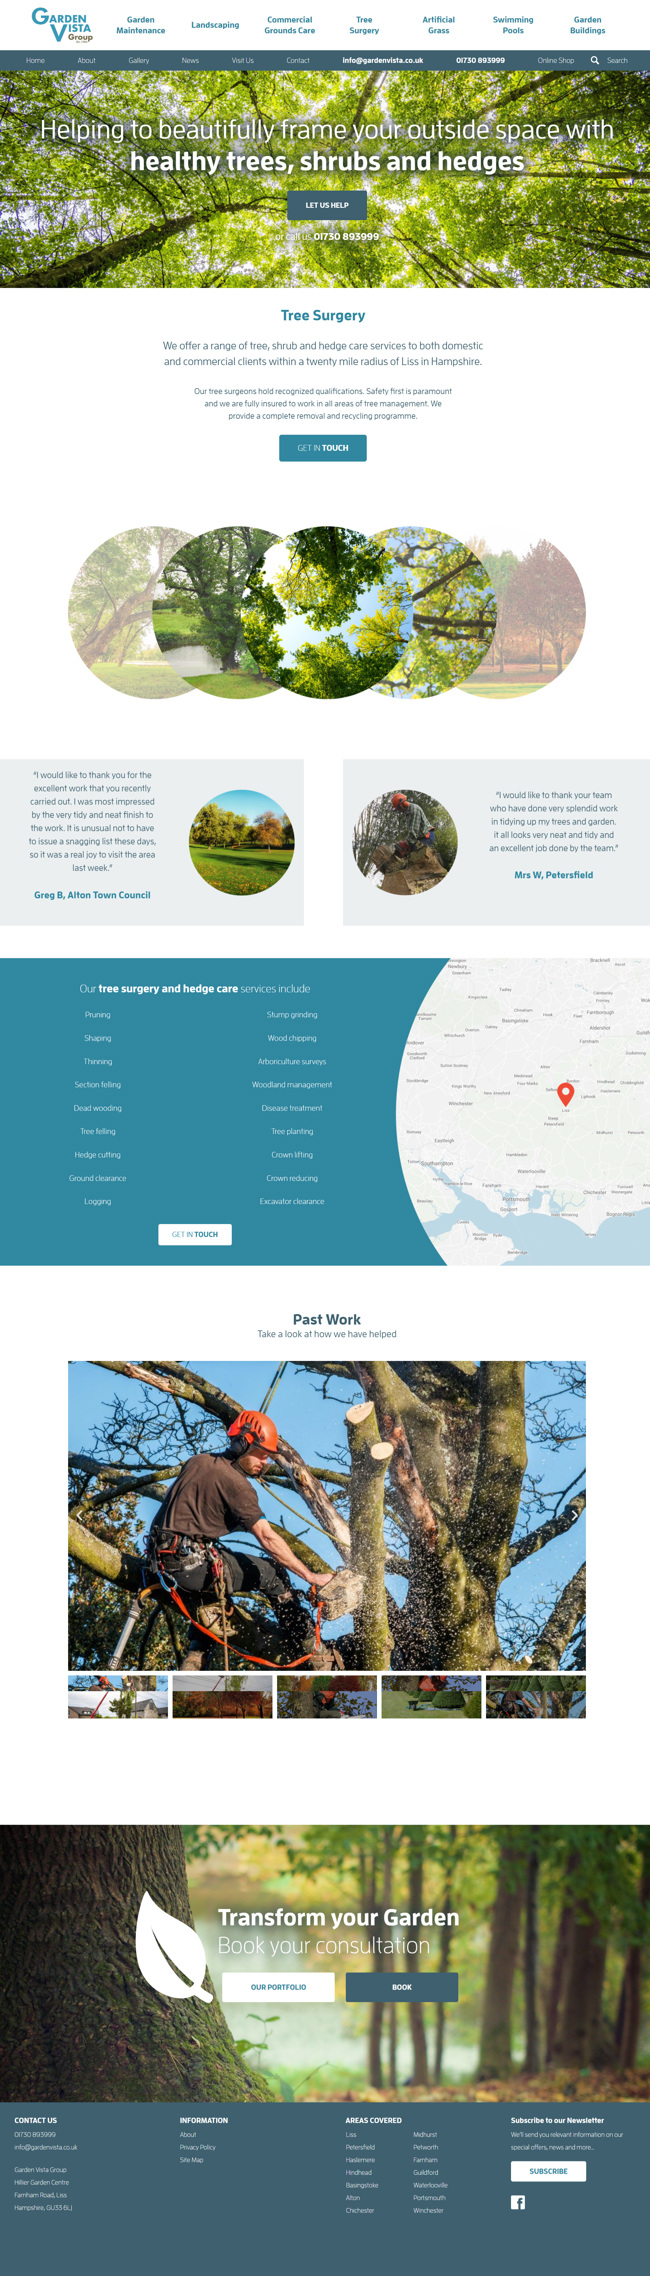 Garden Vista Group Website Design and WordPress Development SP005 Tree Surgery